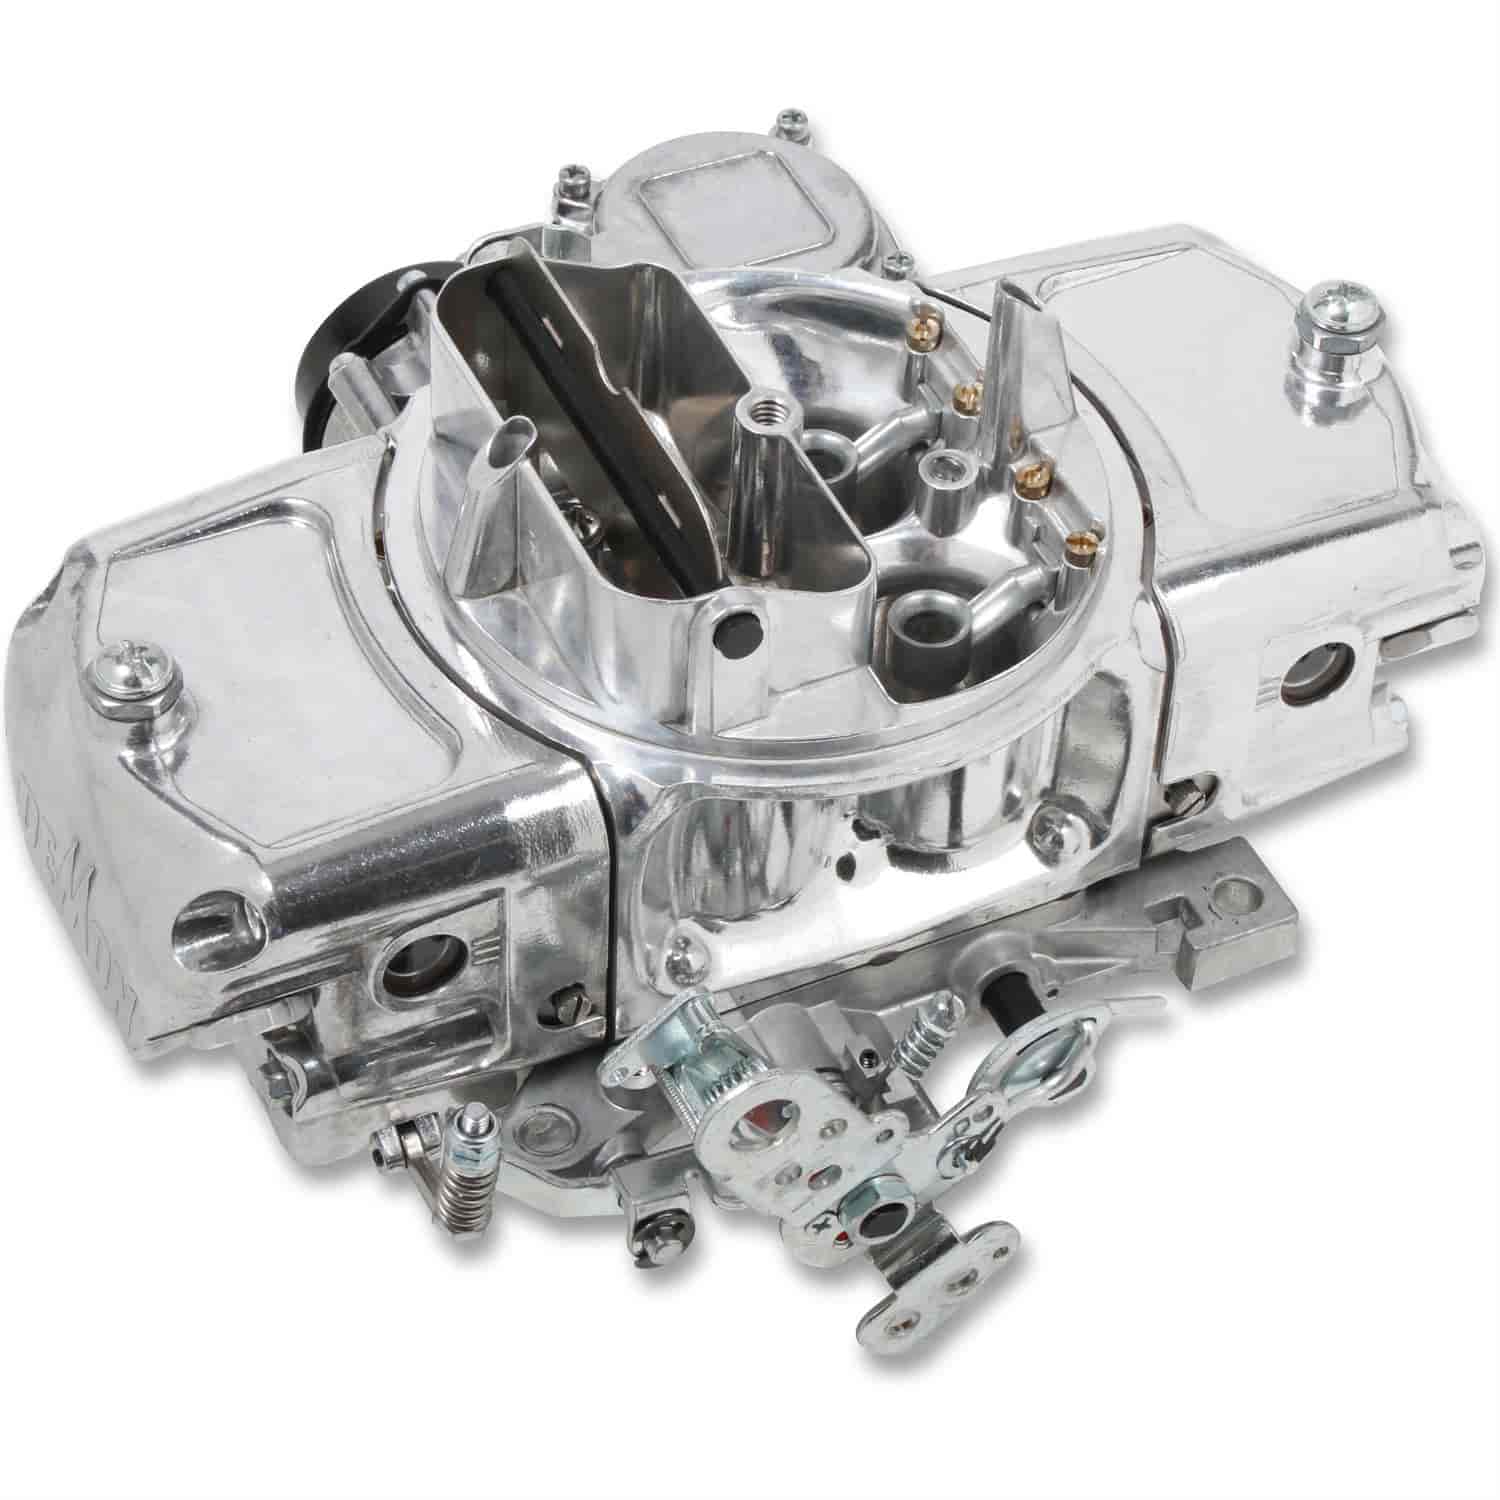 650 CFM Road Demon Carburetor [Electric Choke, Vacuum Secondaries]